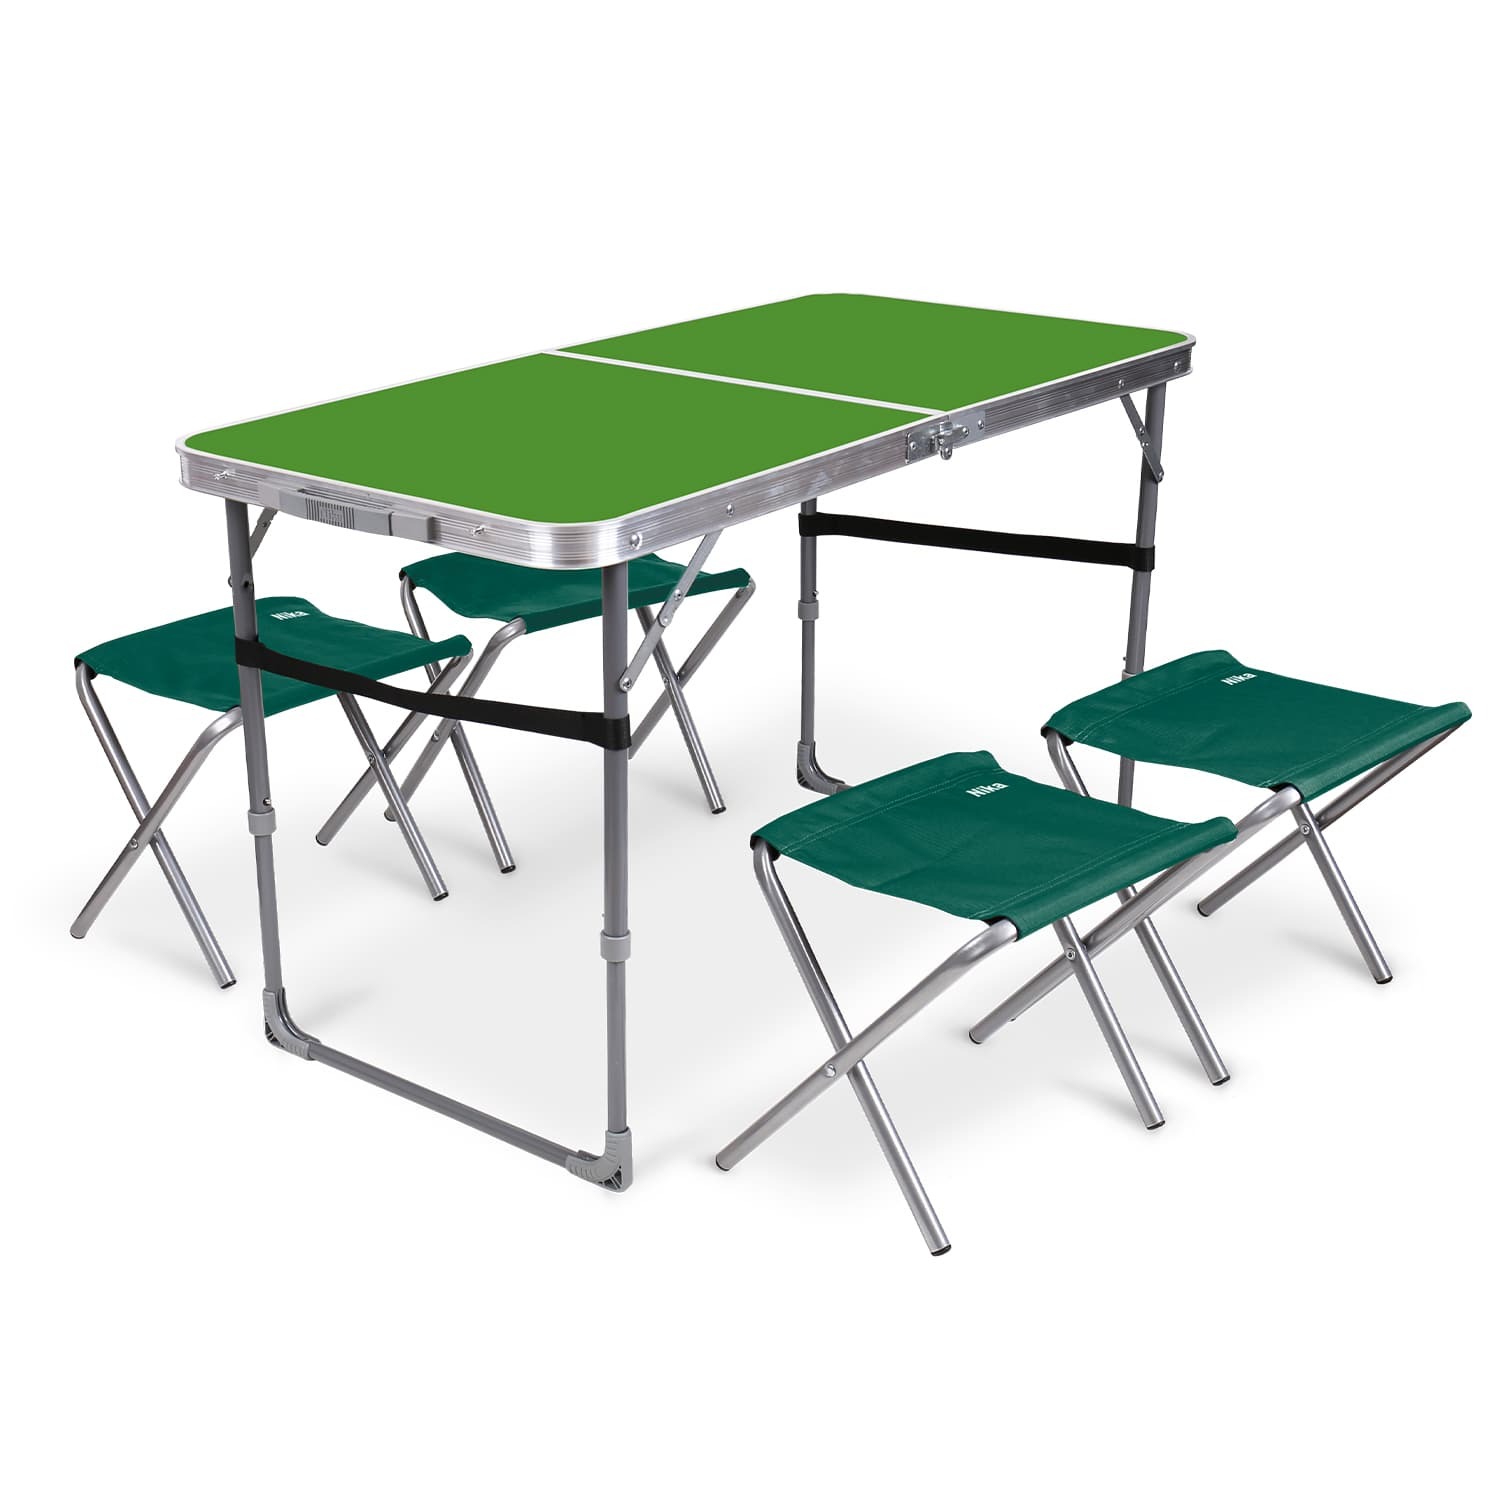 Комплект складной мебели Ника зеленый стол с изумрудными табуретами 5 предметов, цвет серый